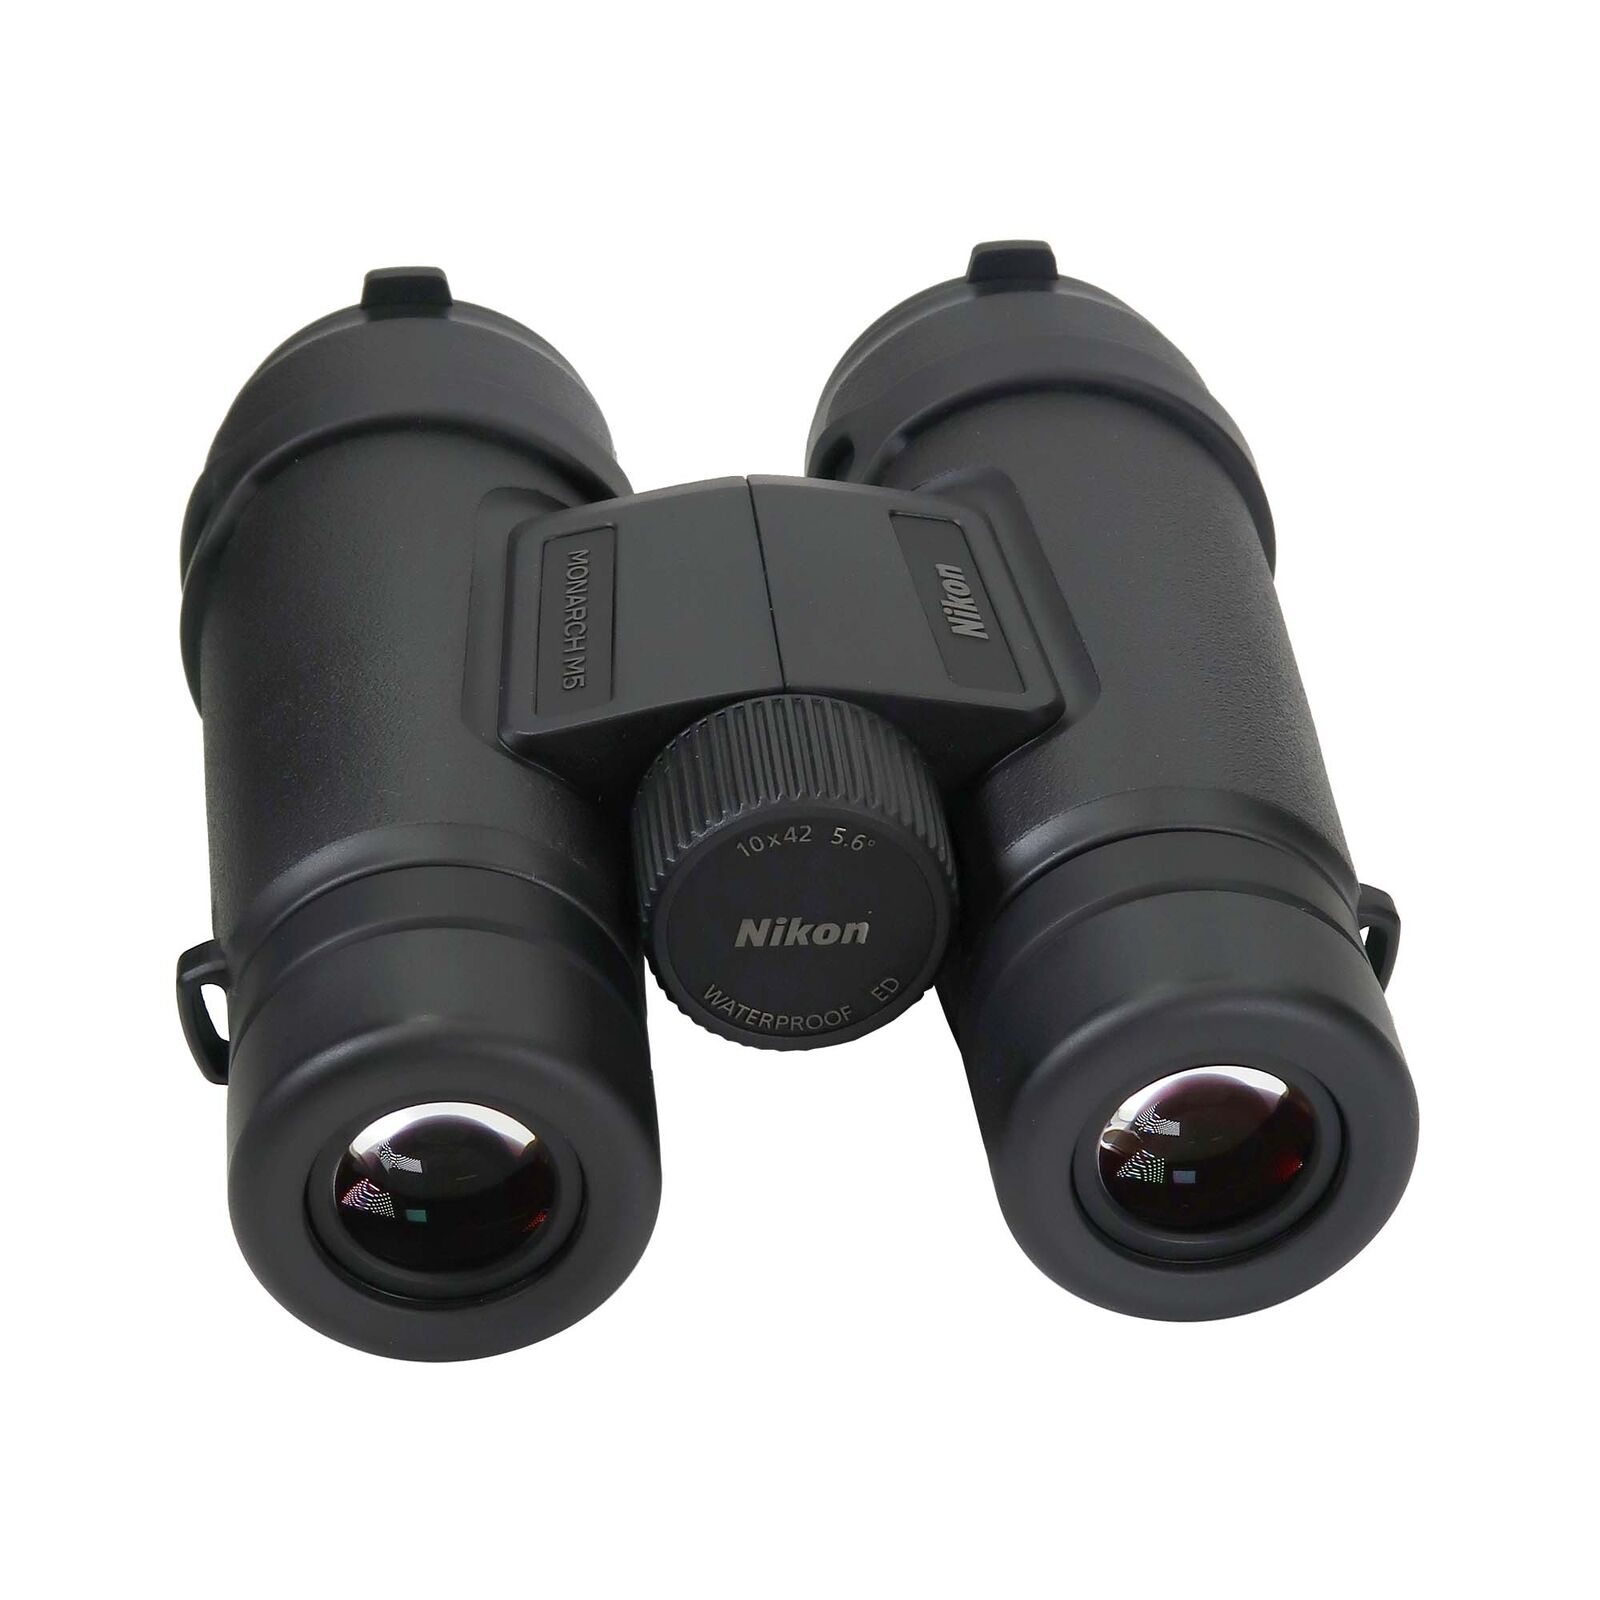 Nikon 10X42 Monarch M5 Waterproof Roof Prism Binoculars (Black) And Cleaning Kit